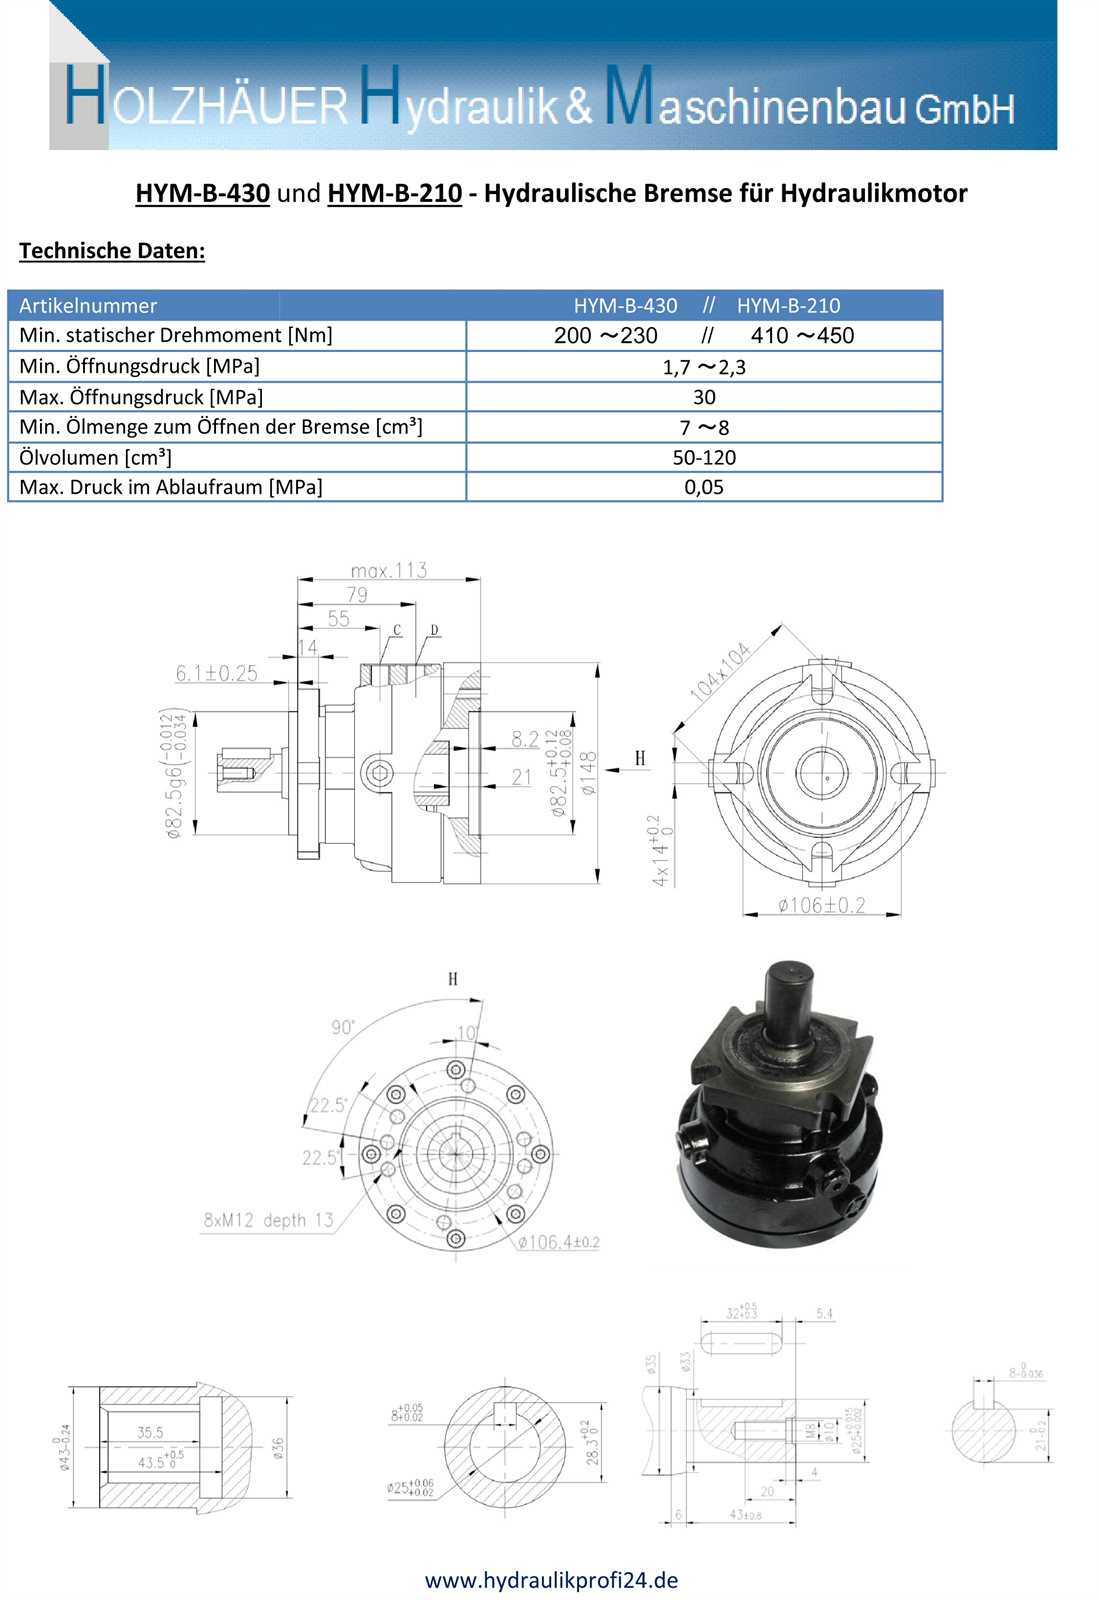 Hydraulische Bremse für Hydraulikmotor 25 mm Welle Nm-430 HMP HMR